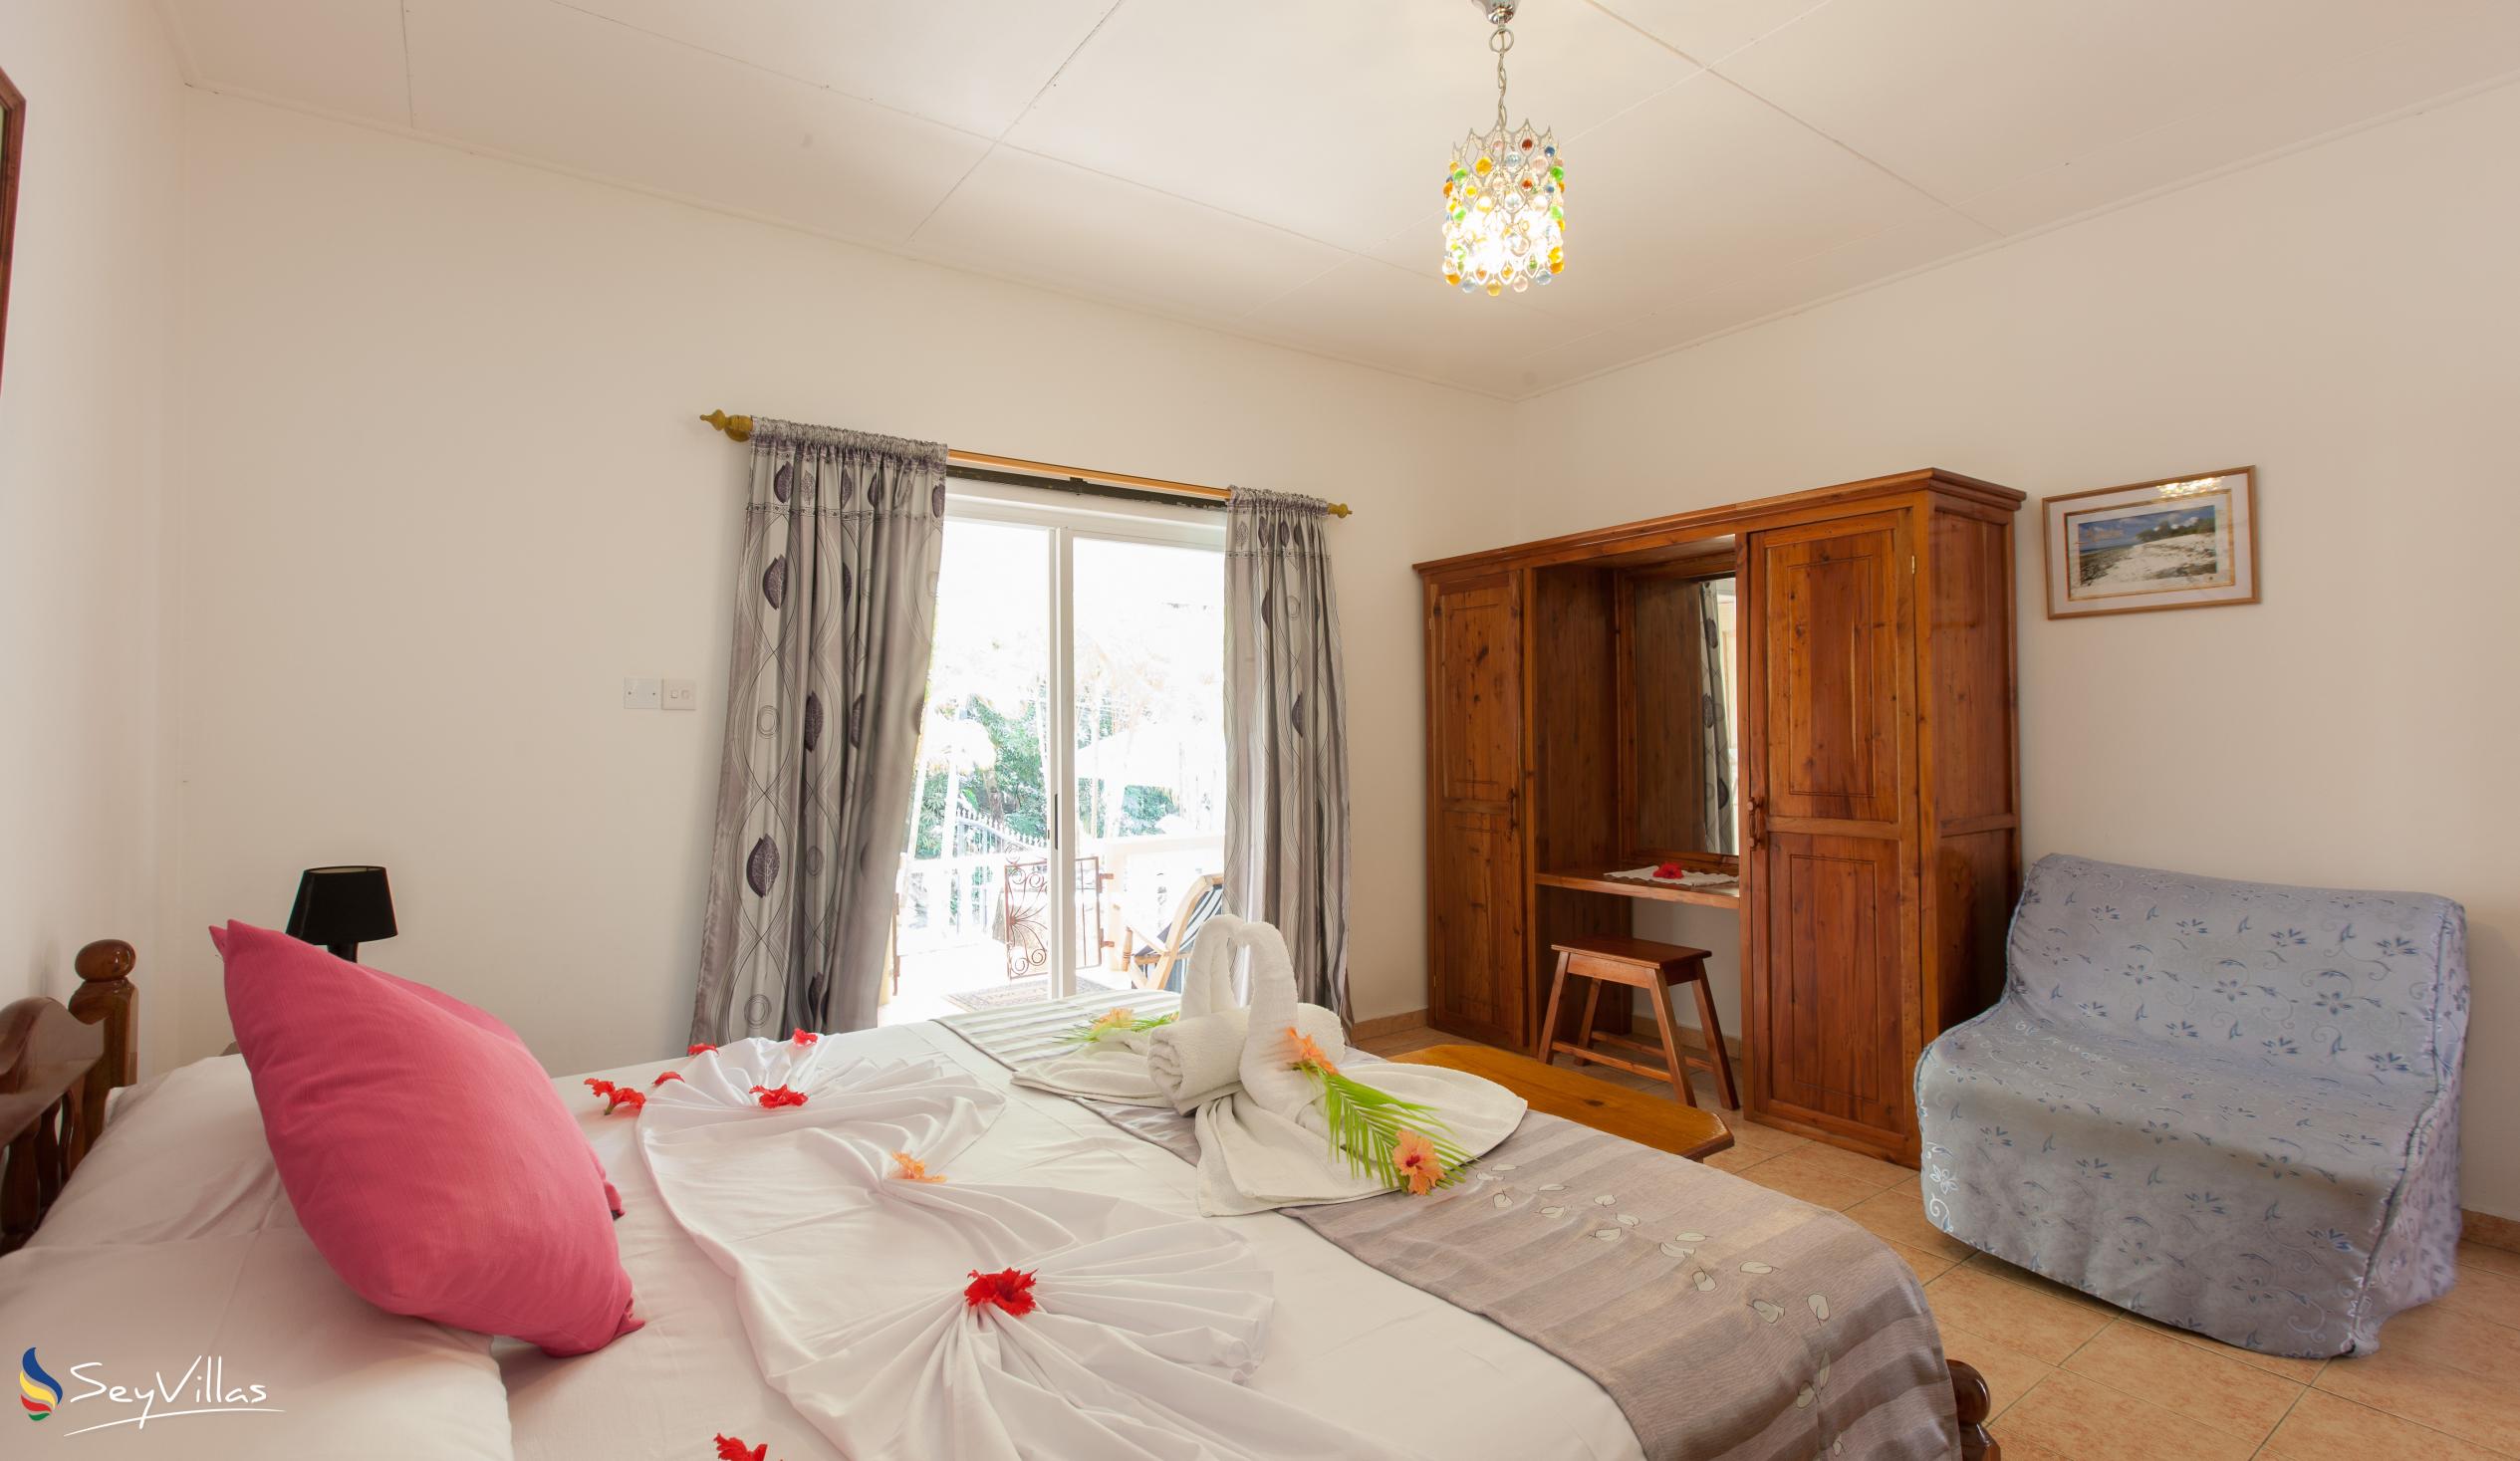 Foto 61: Acquario Villa - Appartamento con 1 camera da letto - Praslin (Seychelles)